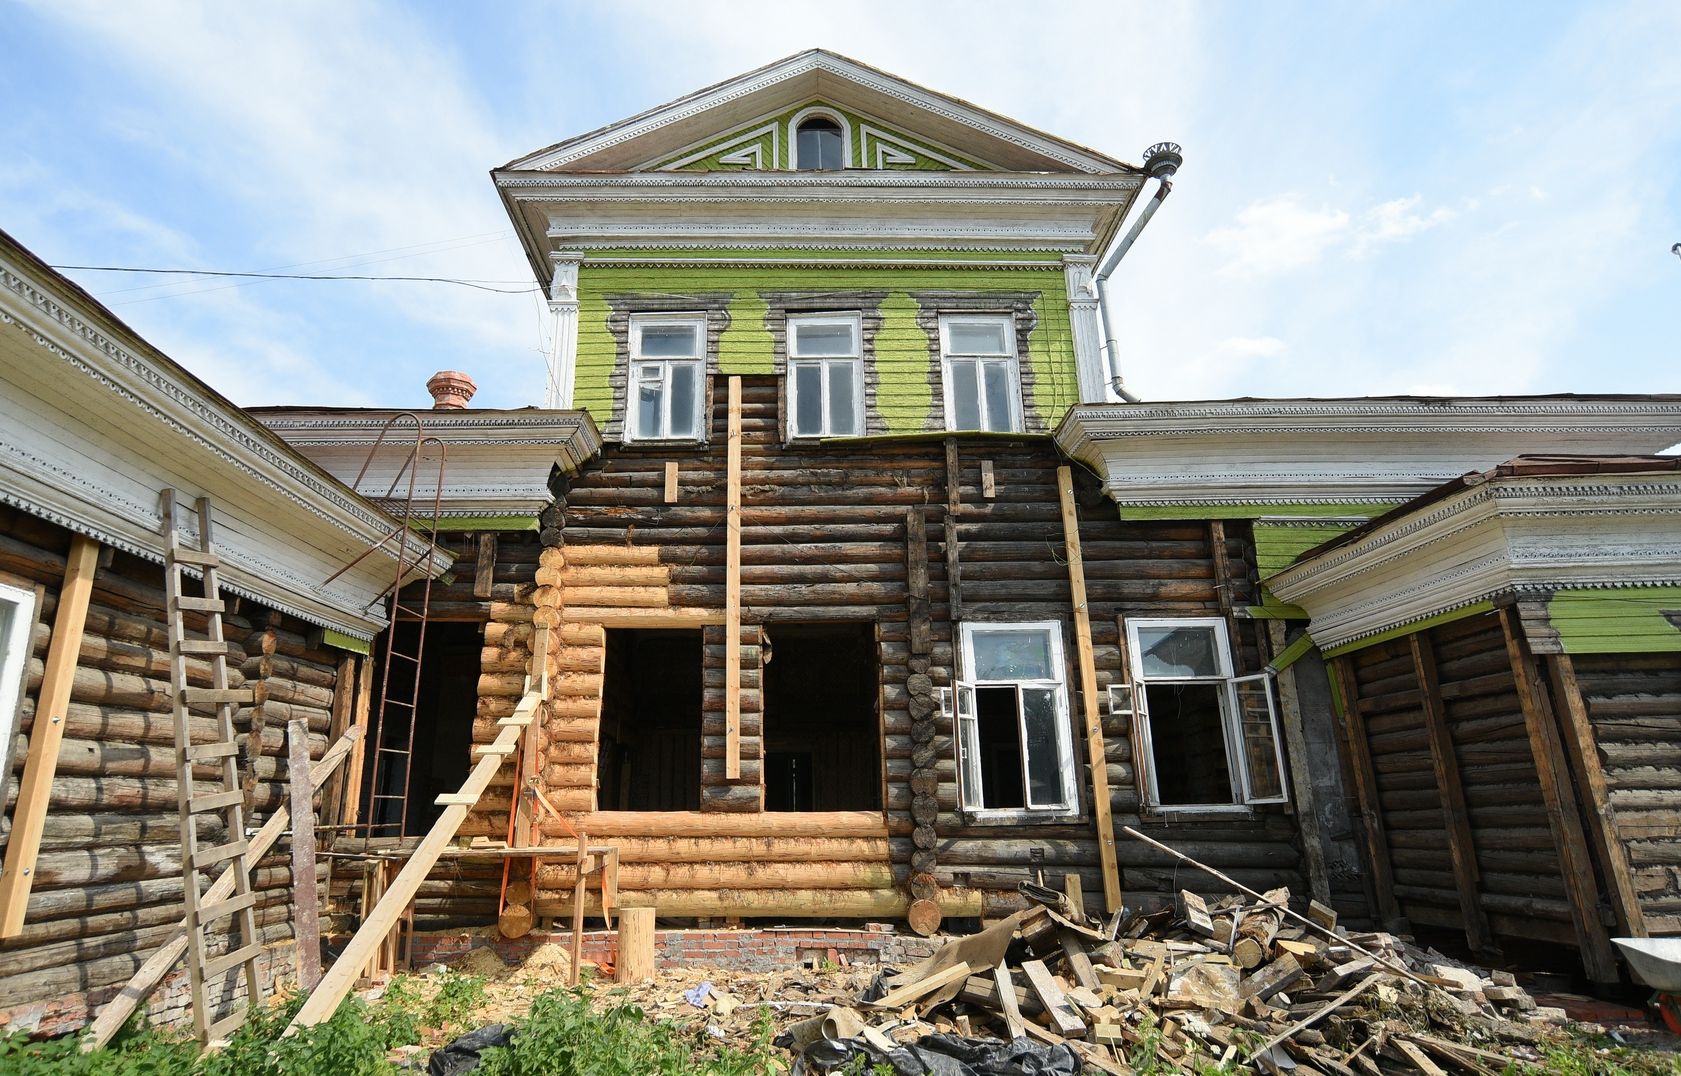 Почти на 90% сохранен оригинальный сруб дома Засецких – самого старого сохранившегося деревянного здания в Вологде